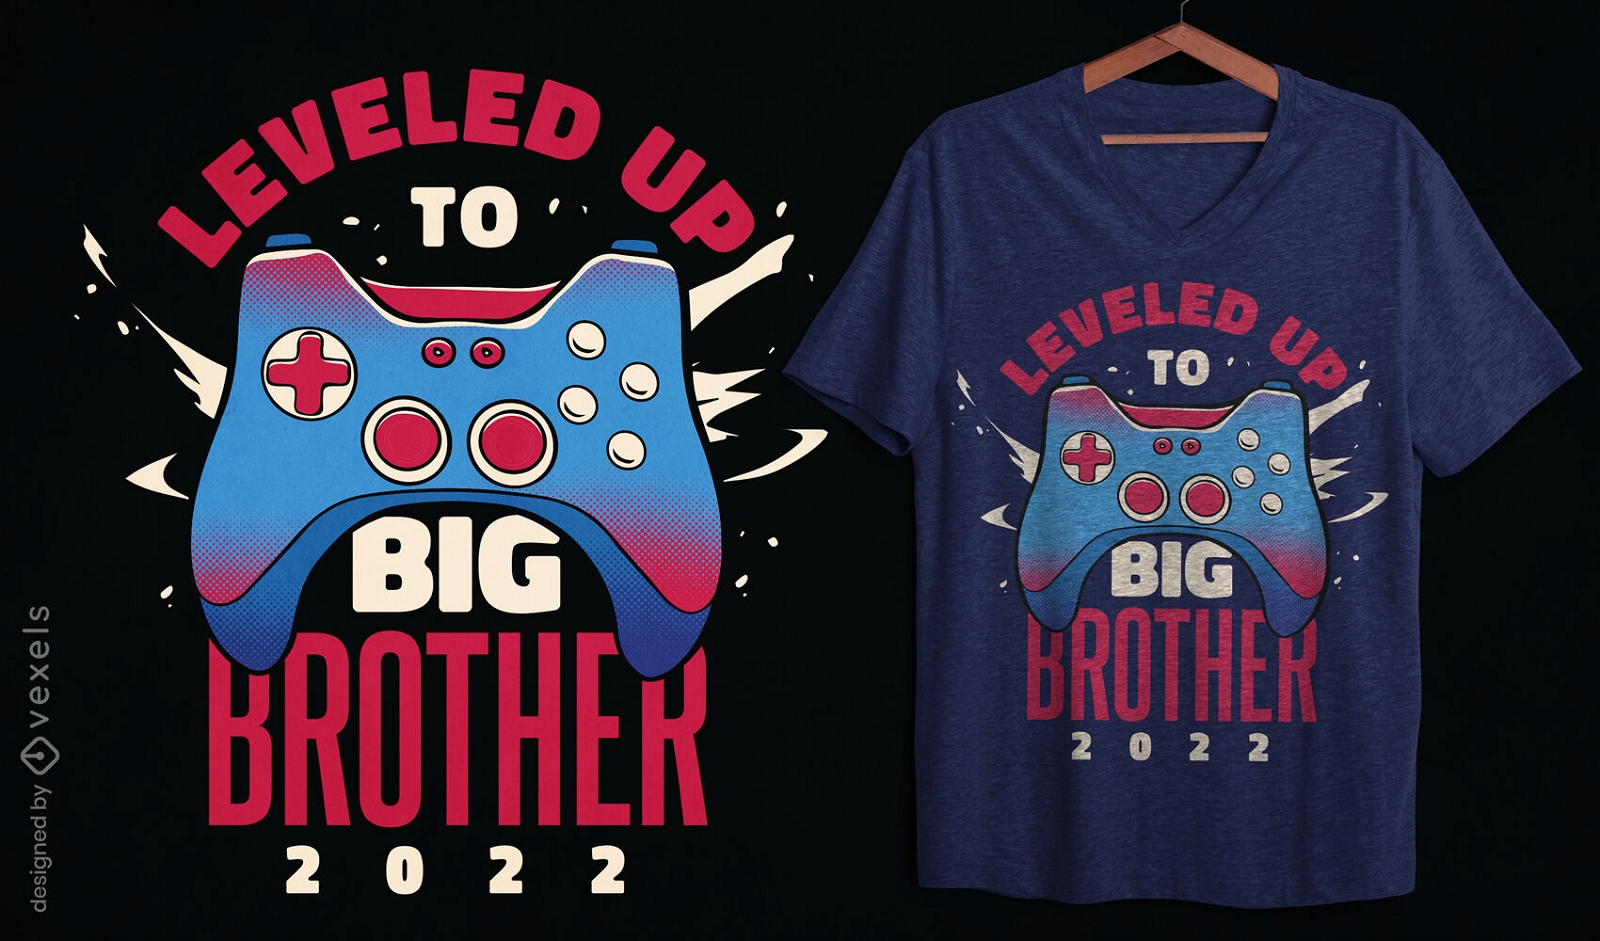 Design de camiseta com joystick de jogo para irmão mais velho